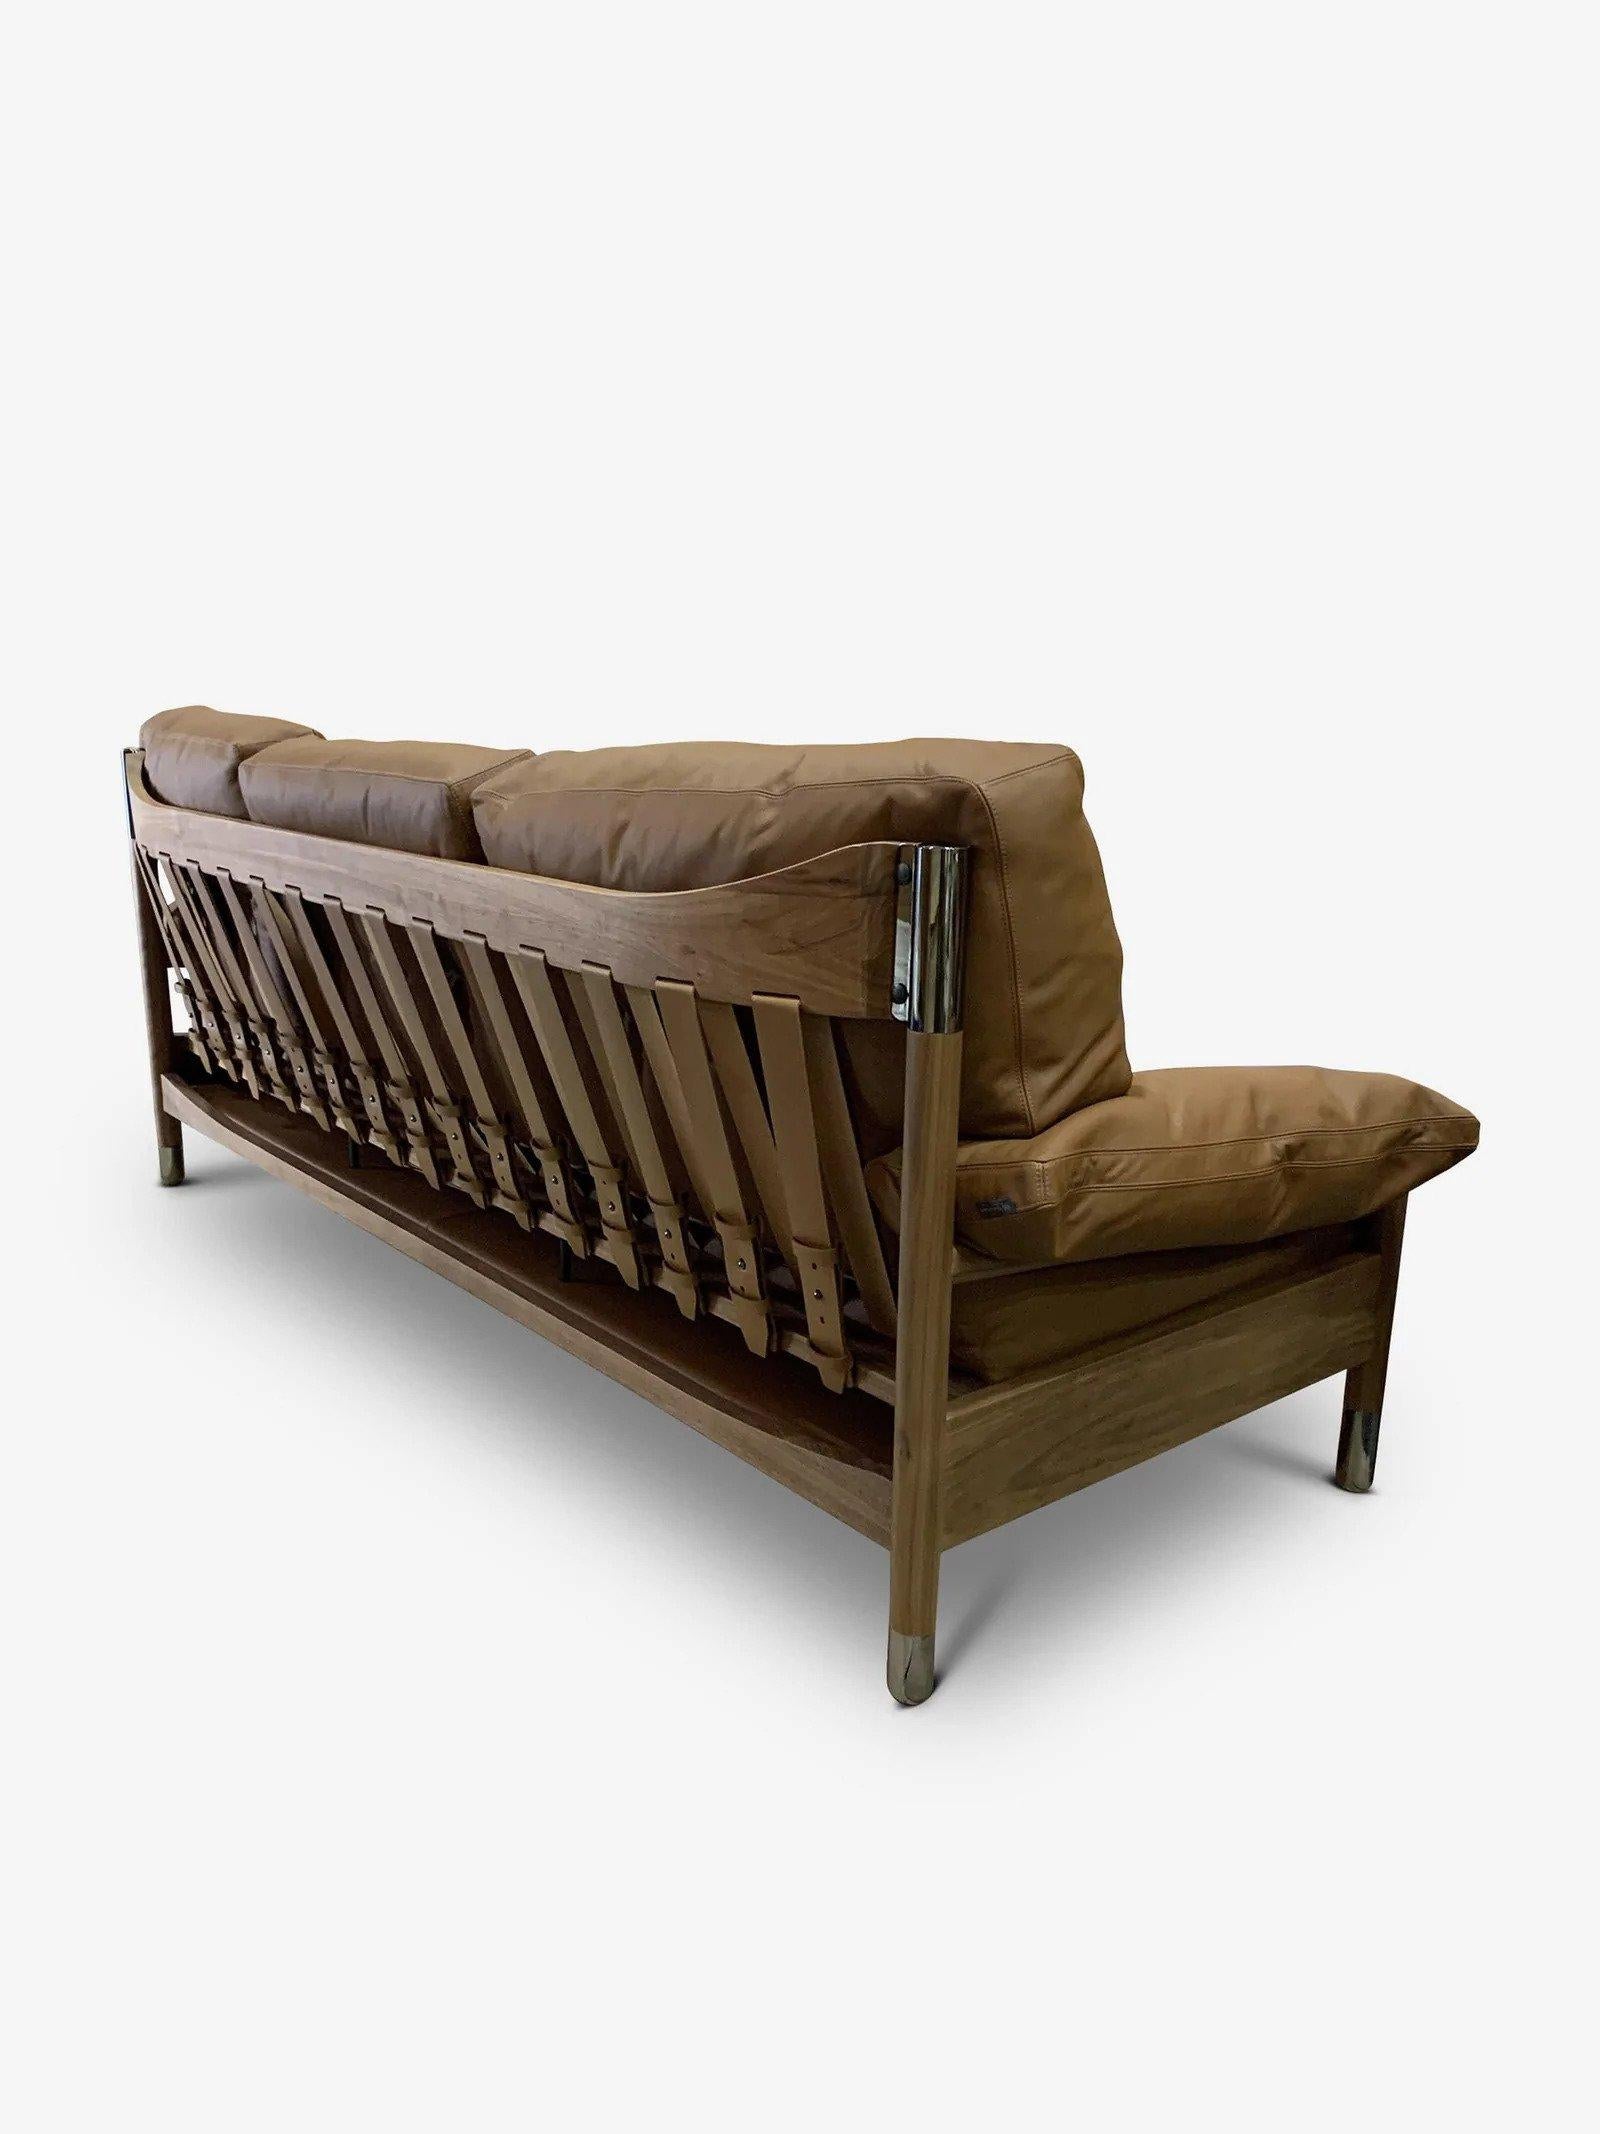 Contemporary Sella Sofa For Sale